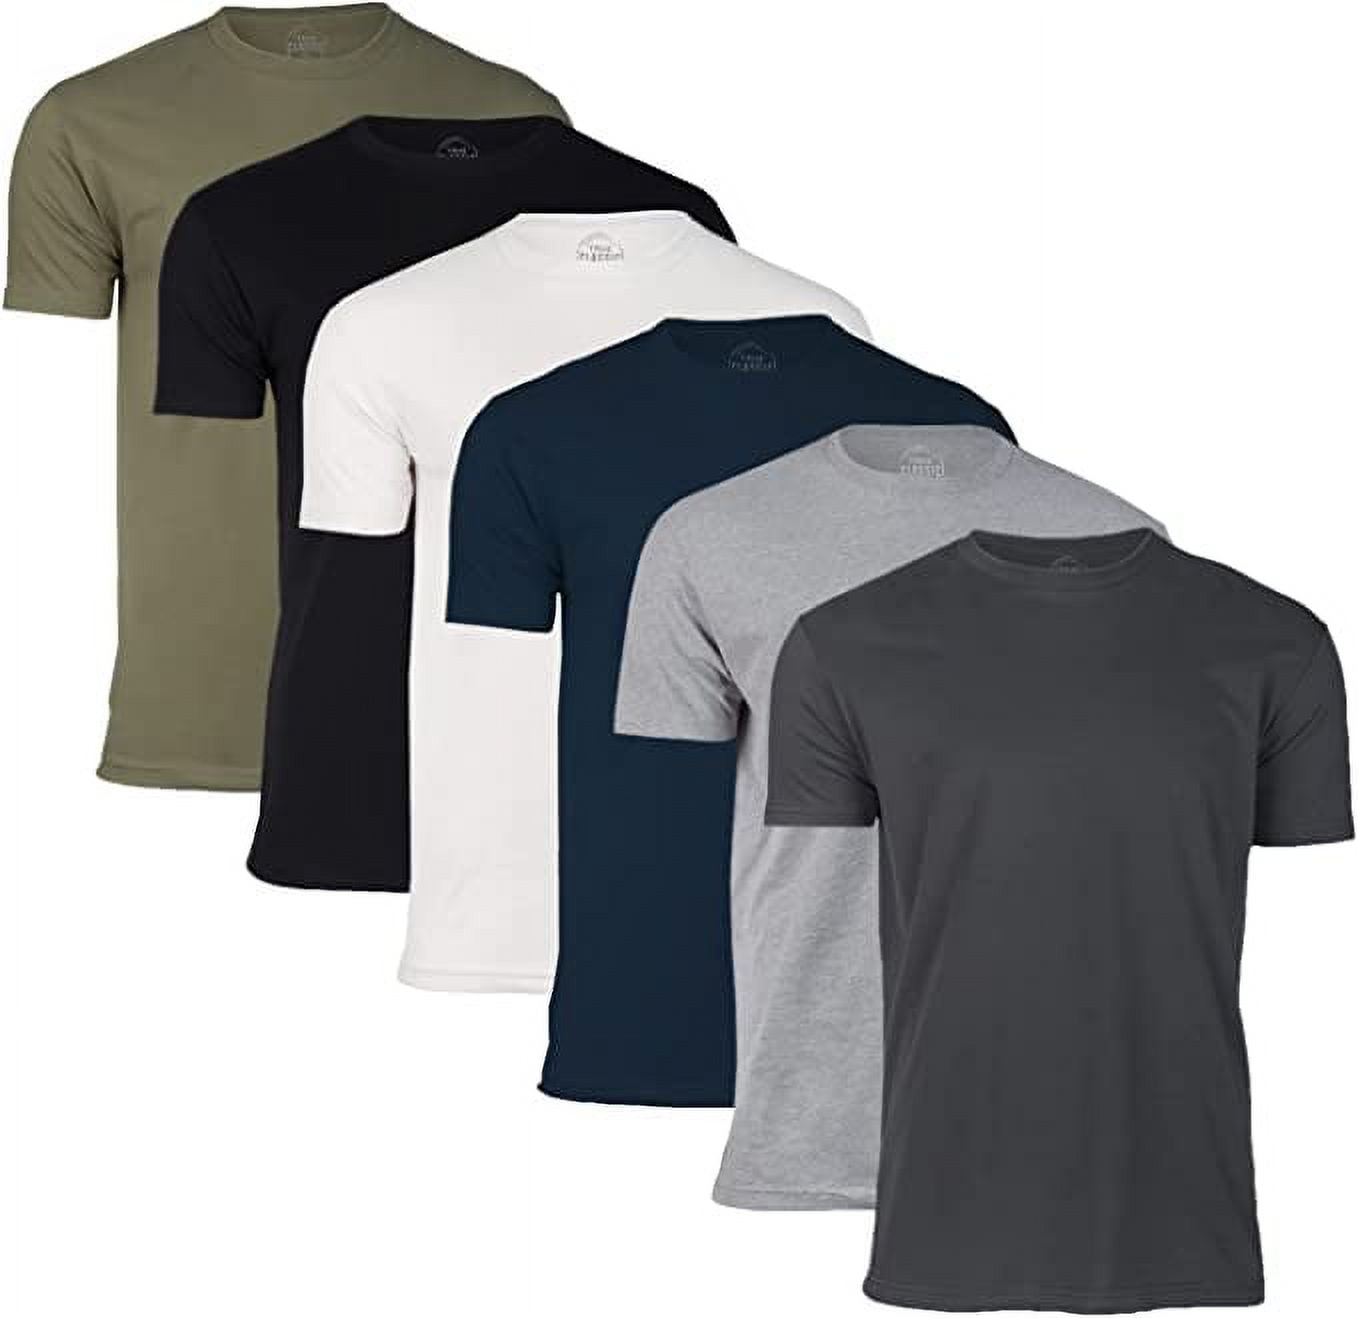 Soft Sleeve Lucky Brand Jersey Graphic Tee Cotton Short 2-Pack T-Shirt Logo Men\'s Blend Print